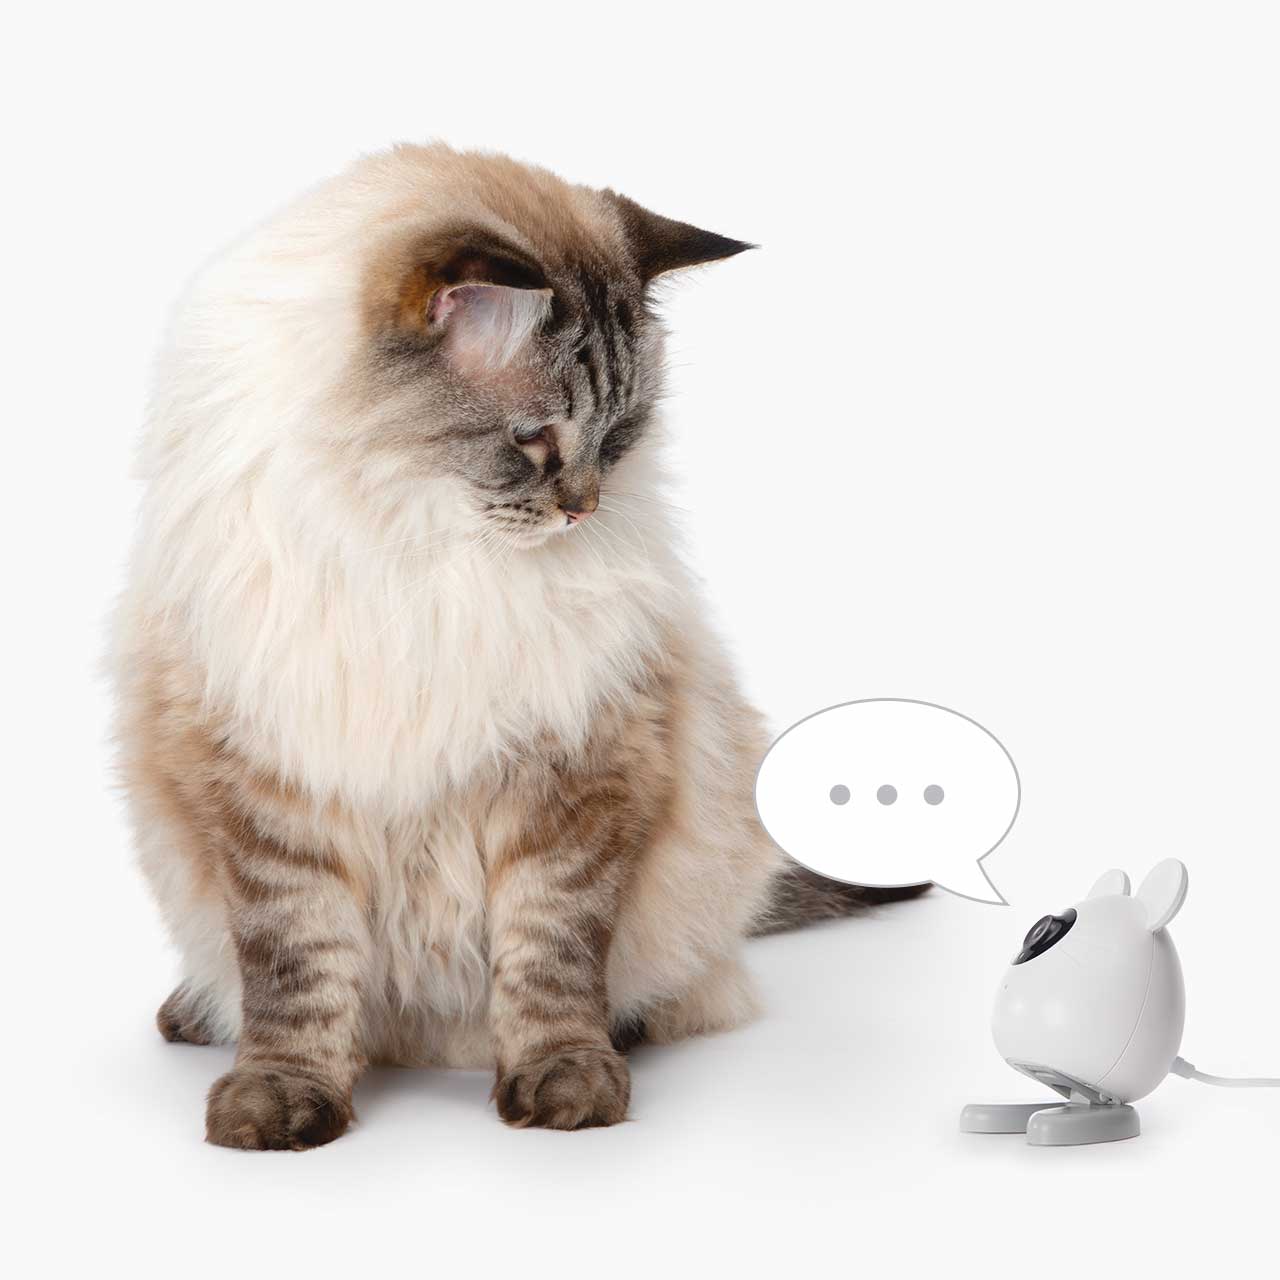 Dos direcciones de audio - habla con tu gato